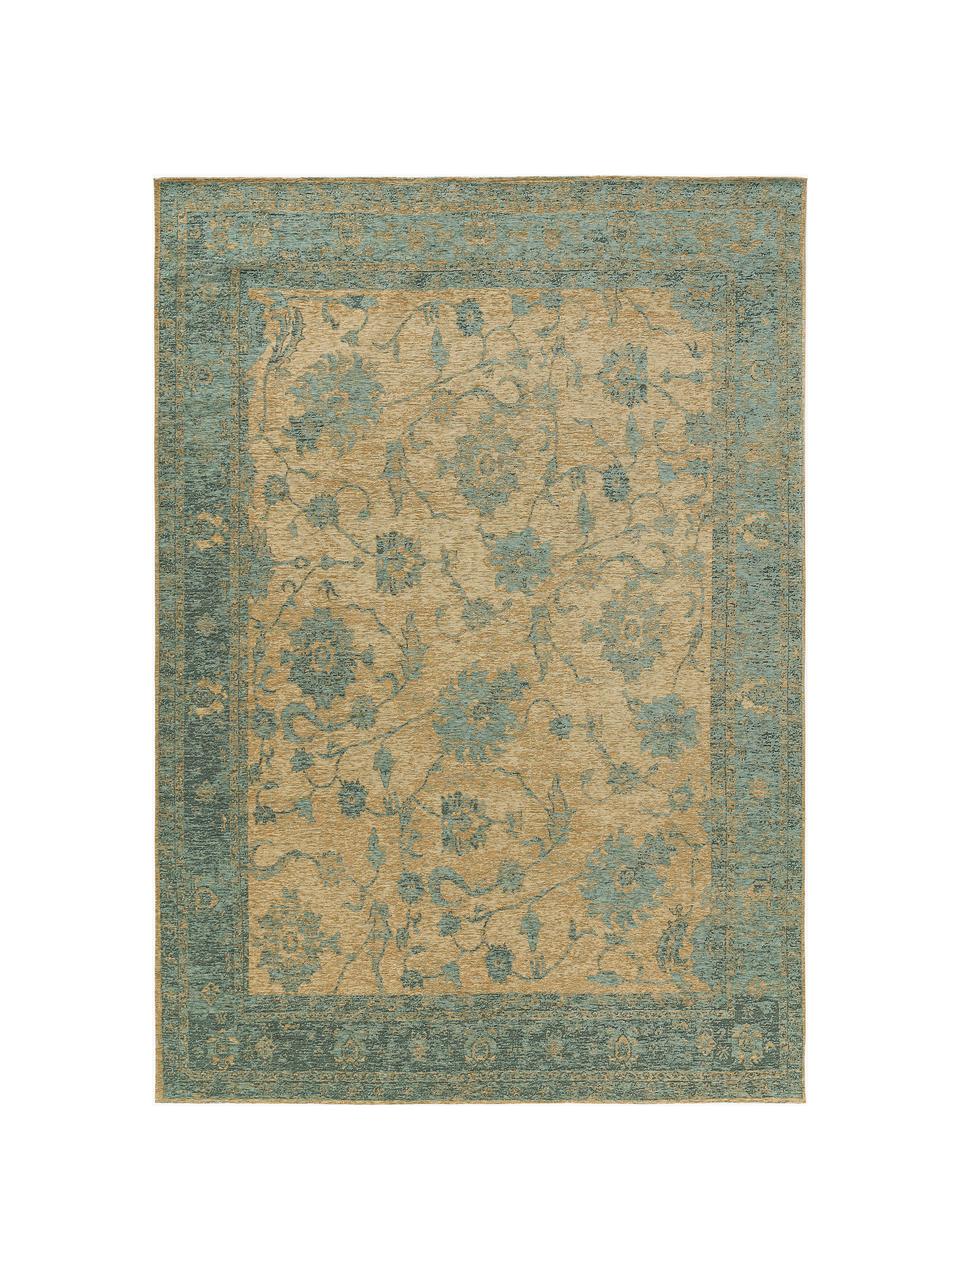 Teppich Frencie mit Ornament-Muster, 55 % Polyacryl, 27 % Polyester, 17 % Baumwolle, 1 % Latex, Grün- und Beigetöne, B 120 x L 180 cm (Größe S)